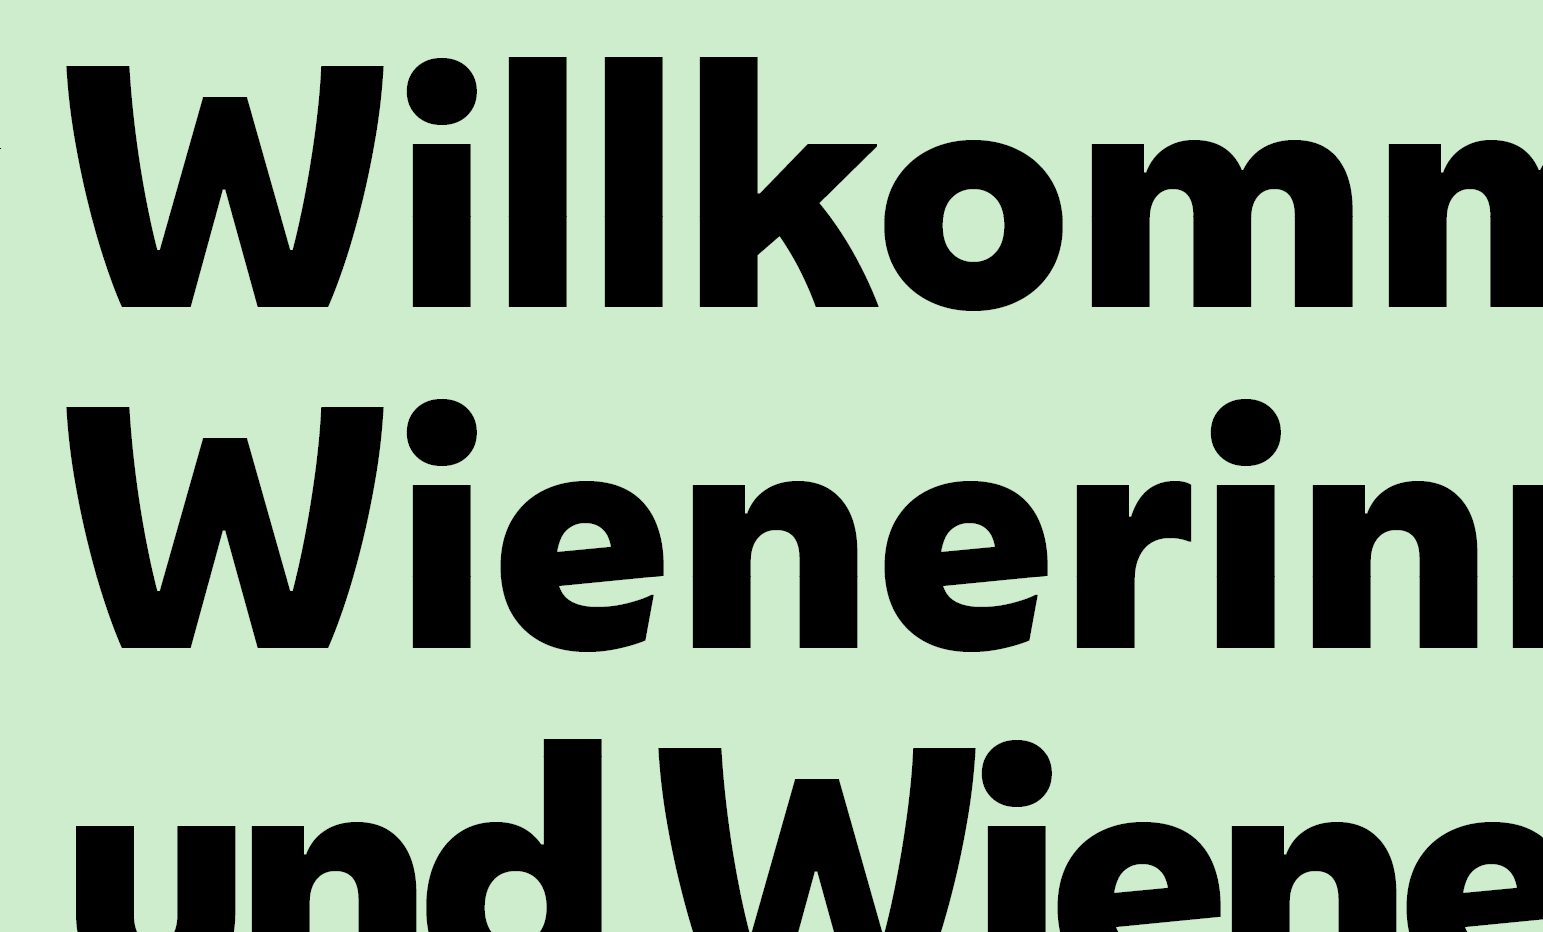 Beispiel für Typographie: "Willkommen Wienerinnen und Wiener" in fetter Wiener Melange-Schrift